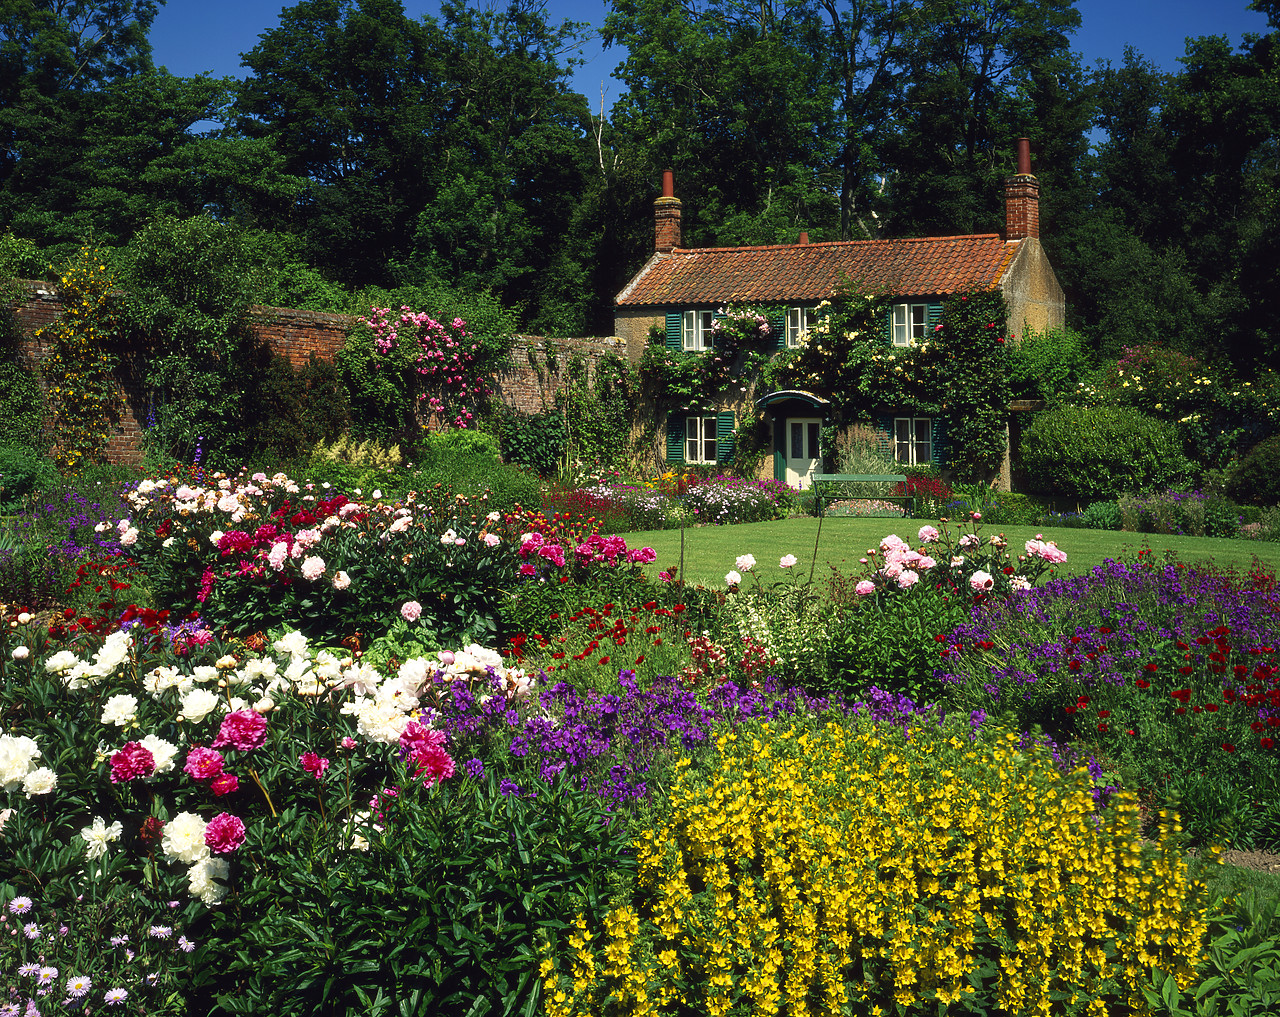 #955545-2 - Gardener's Cottage, Hoveton Hall, Norfolk, England